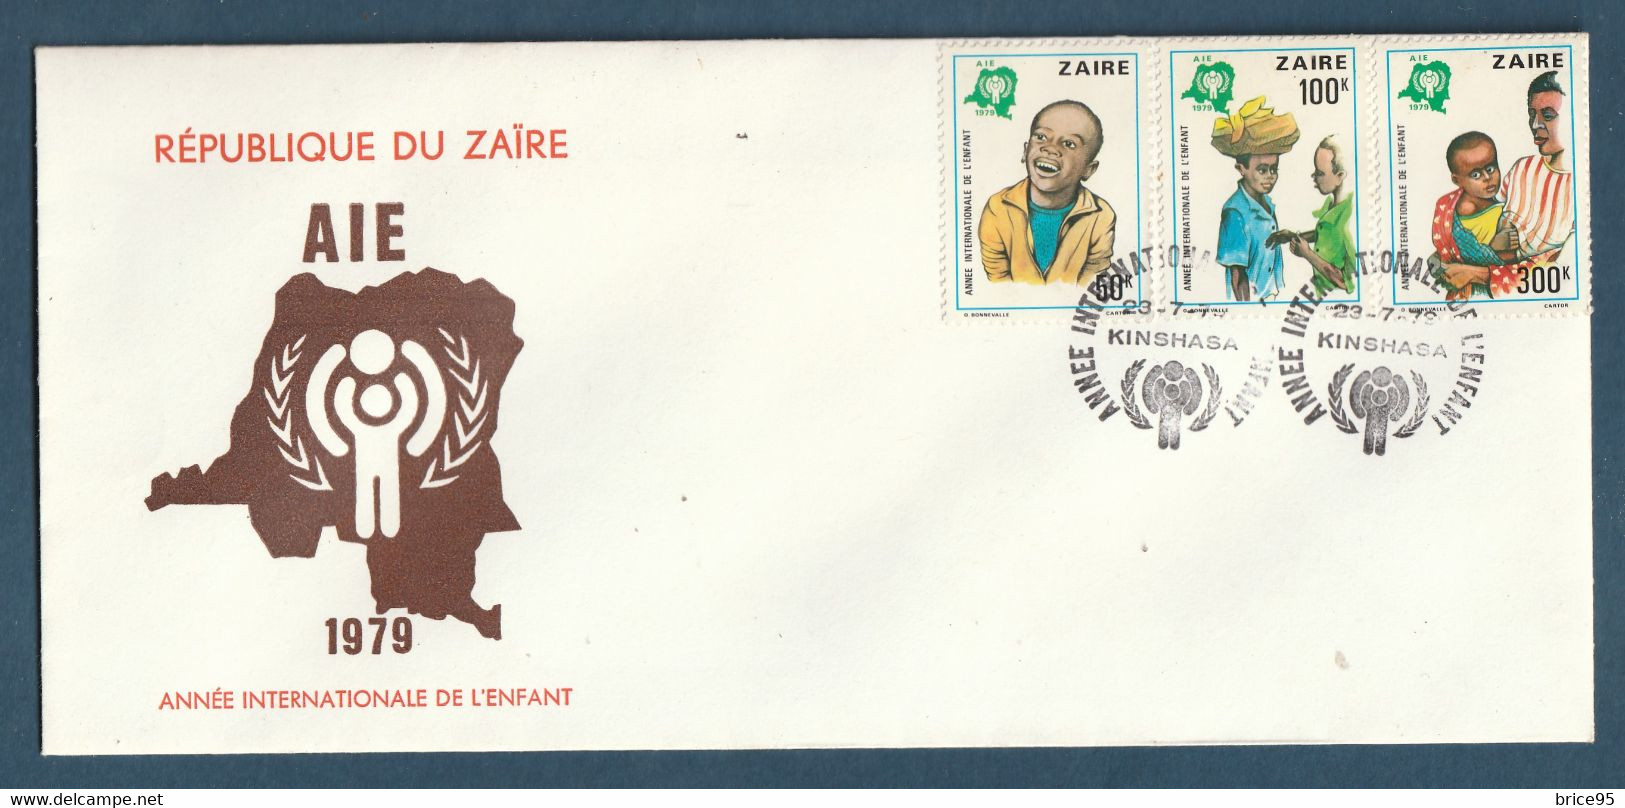 ⭐ Zaire - FDC - Premier Jour - Année Internationale De L'enfant - AIE - Kinshasa - 1979 ⭐ - 1971-1979